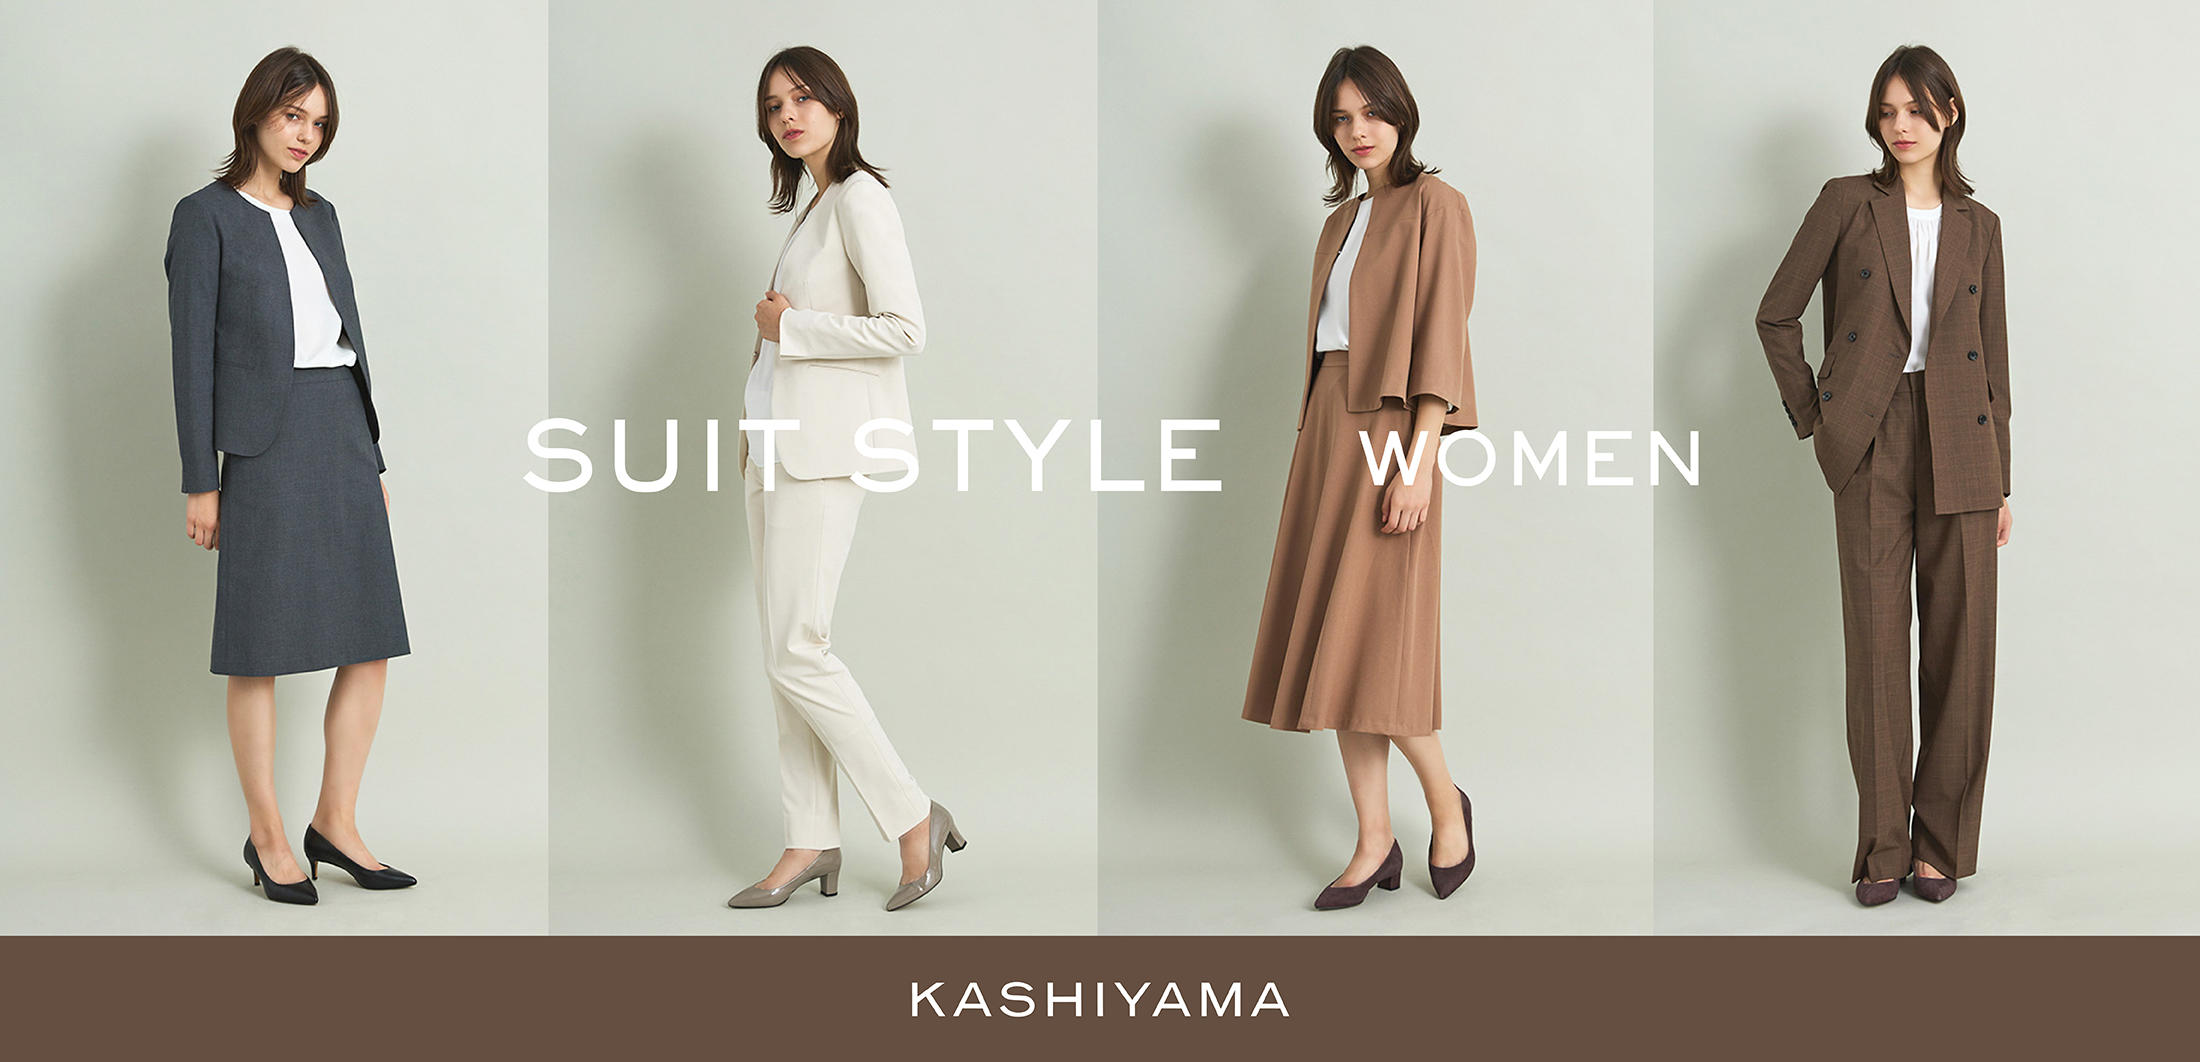 KASHIYAMA WOMENS@X[cX^C